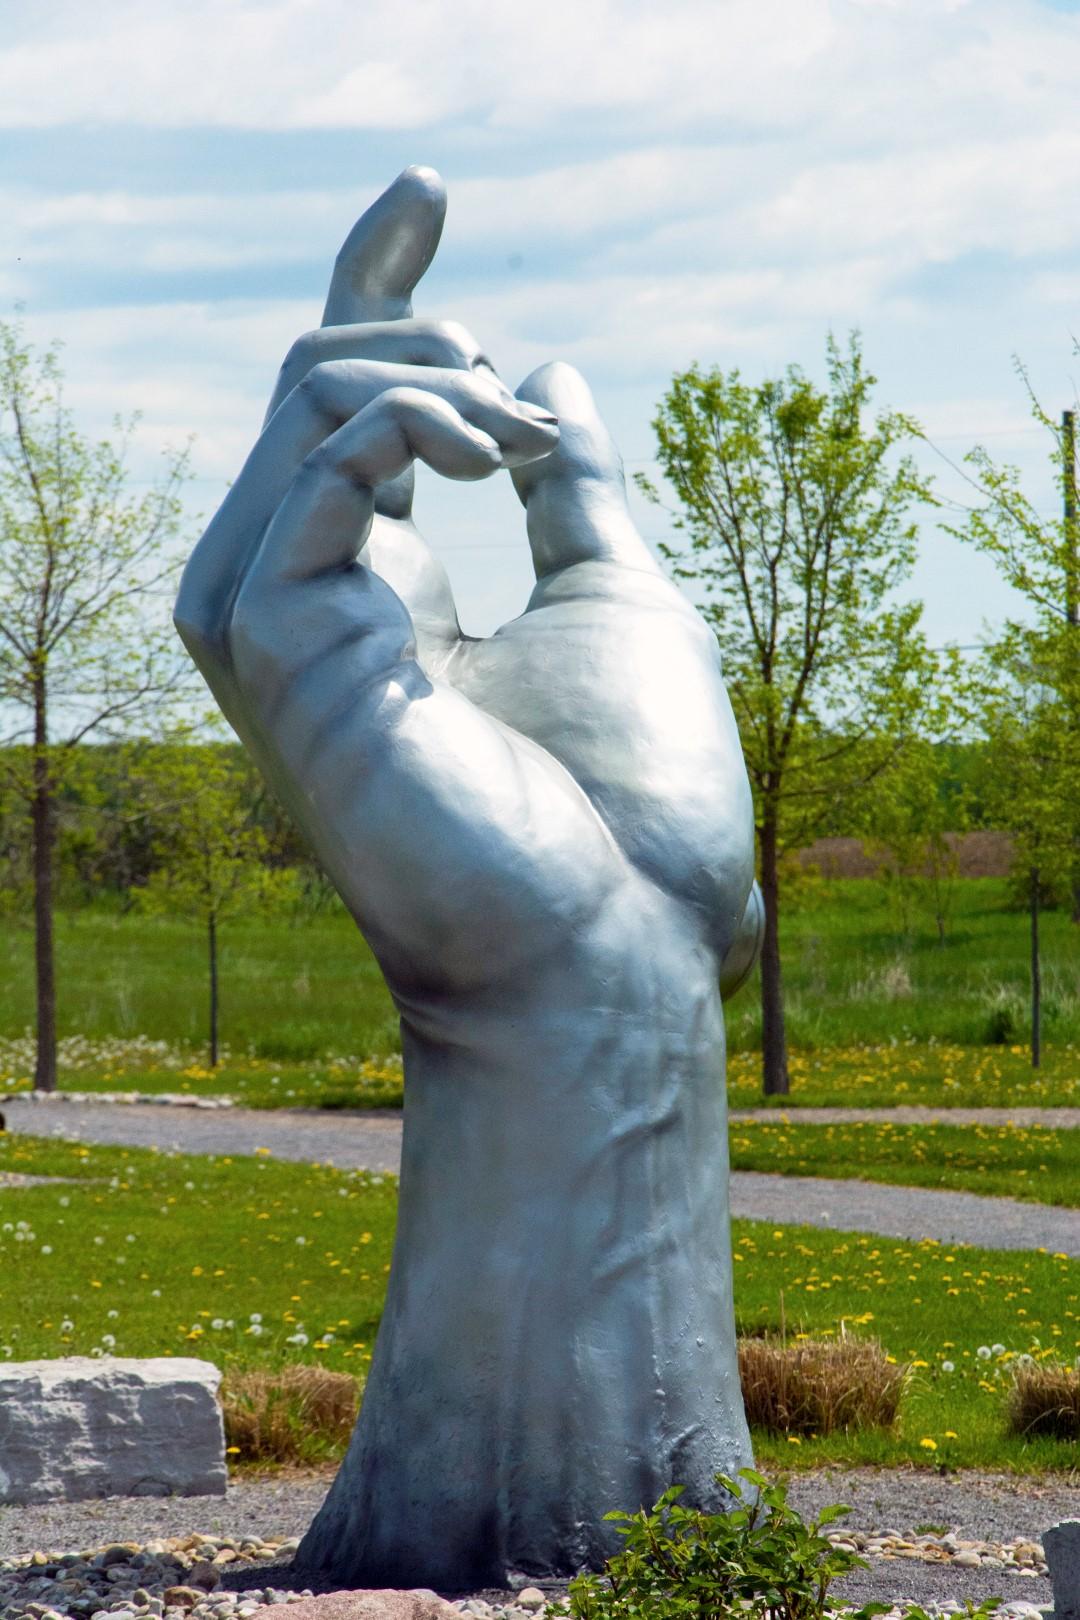 Créée par l'artiste canadien David Sheridan, cette sculpture extérieure en fibre de verre est une intersection unique de la sculpture figurative pop et classique. L'index de la main massive pointe vers le ciel, mais de manière plus ouverte que le